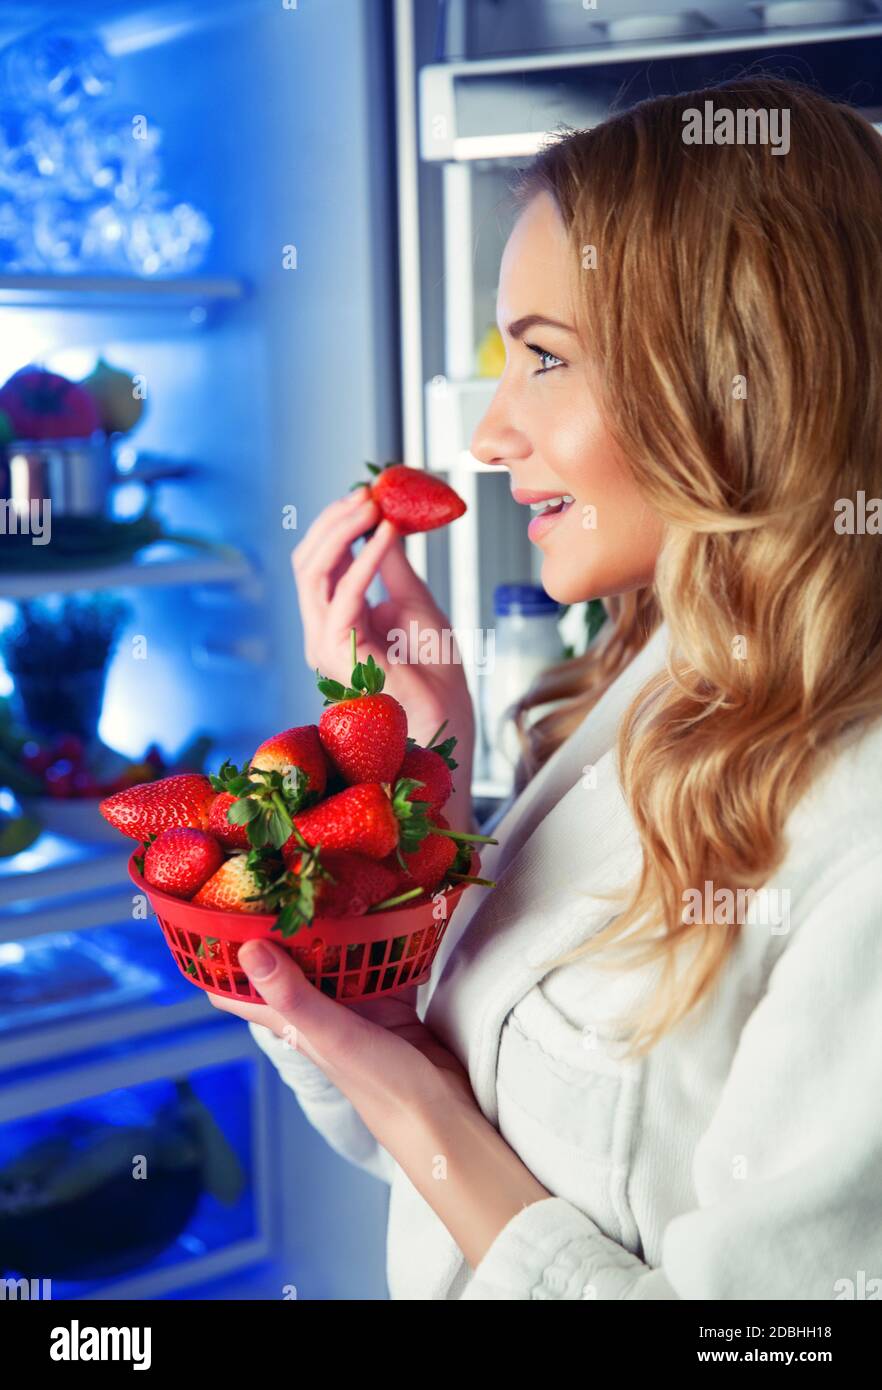 Porträt einer schönen blonden Frau mit Freude essen frische leckere Erdbeeren in der Nähe des offenen Kühlschrank, gute Auswahl, vegetarische Gerichte, Gewichtsverlust, Obst d Stockfoto